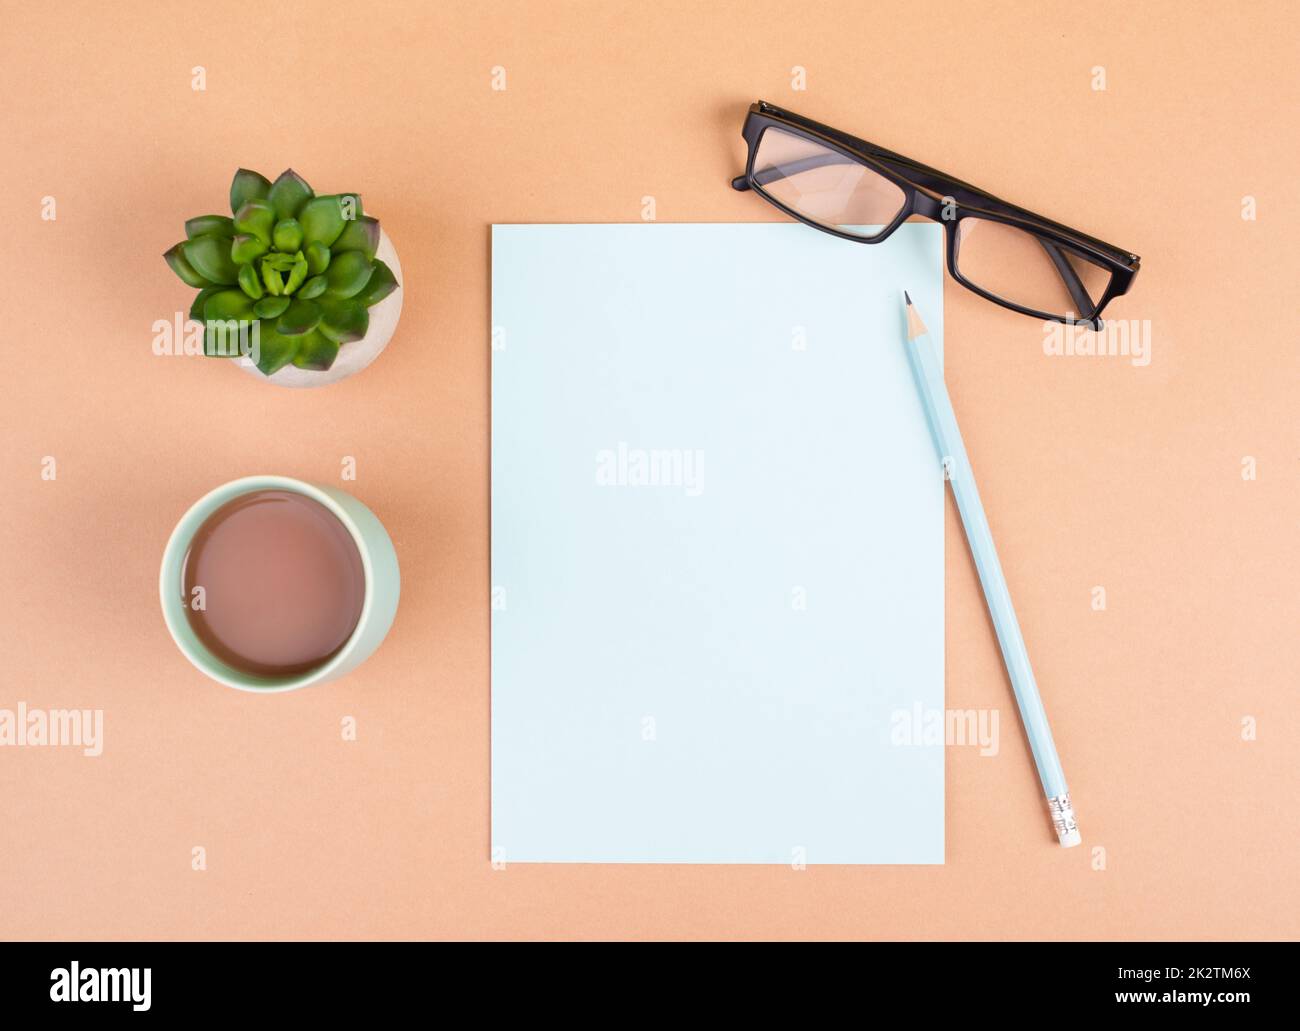 Carta vuota con una penna, una tazza di caffè, occhiali e un cactus, brainstorming per nuove idee, scrivere un messaggio, fare una pausa, ufficio a casa scrivania Foto Stock